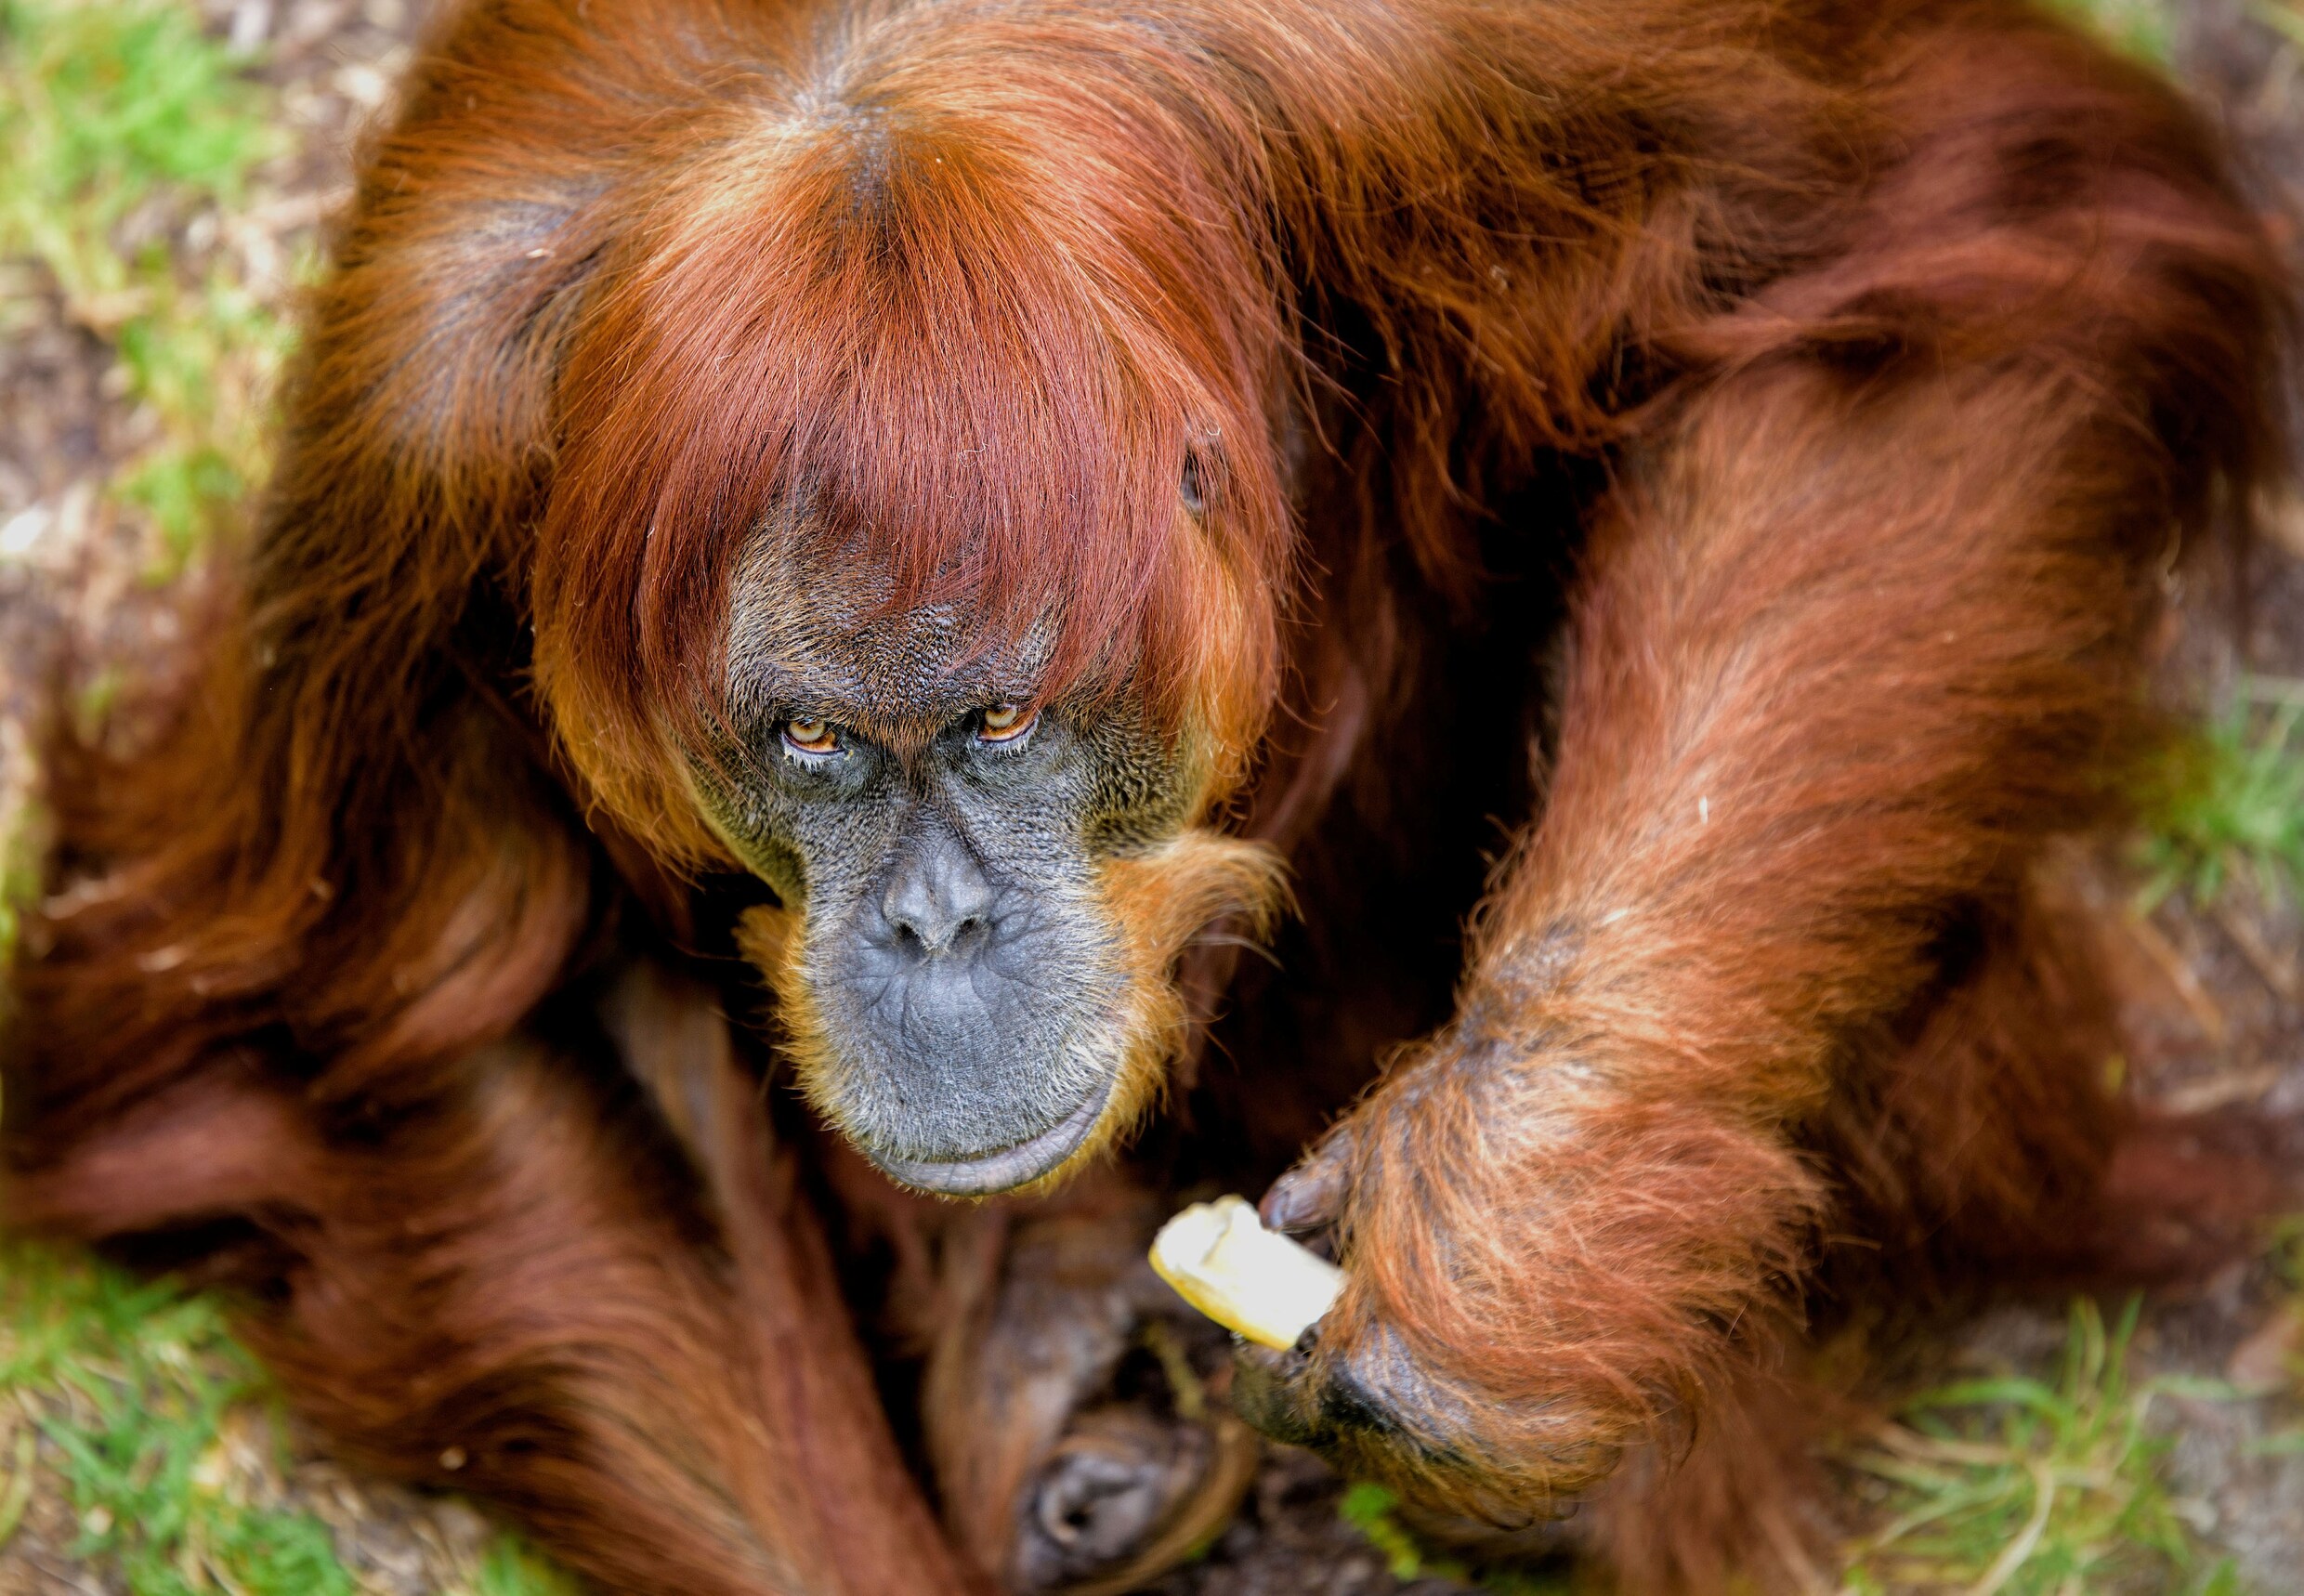 Puan, de oudste Sumatraanse orang-oetan ter wereld, is overleden